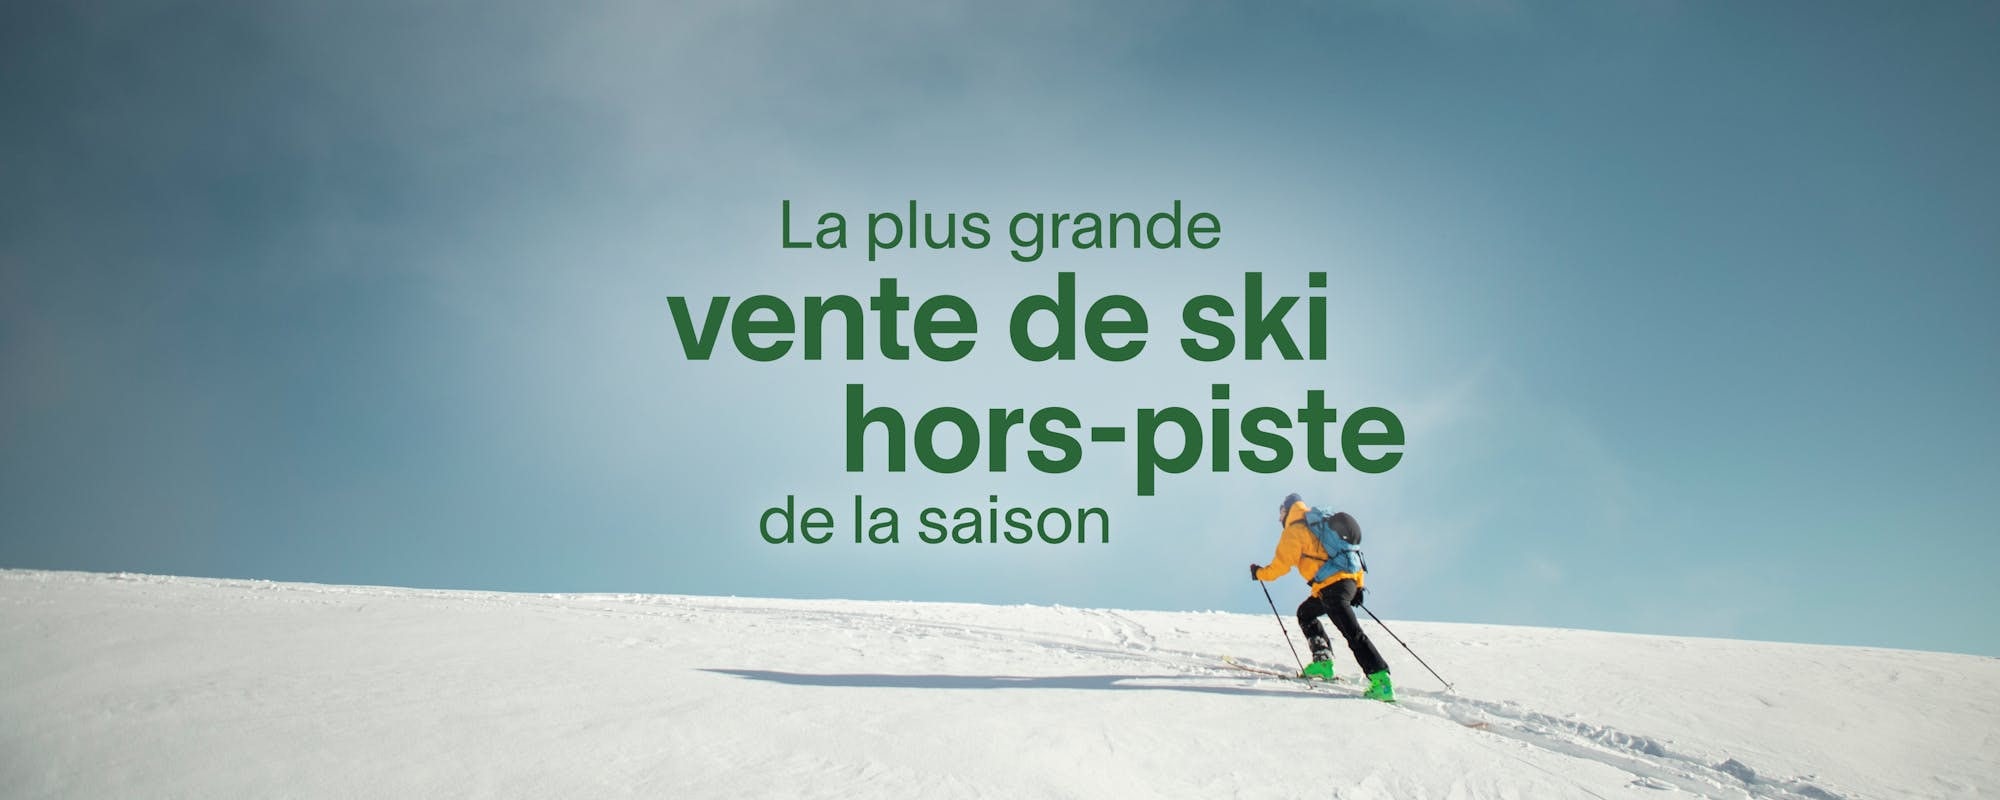 Magasinez les aubaines : ski hors-piste